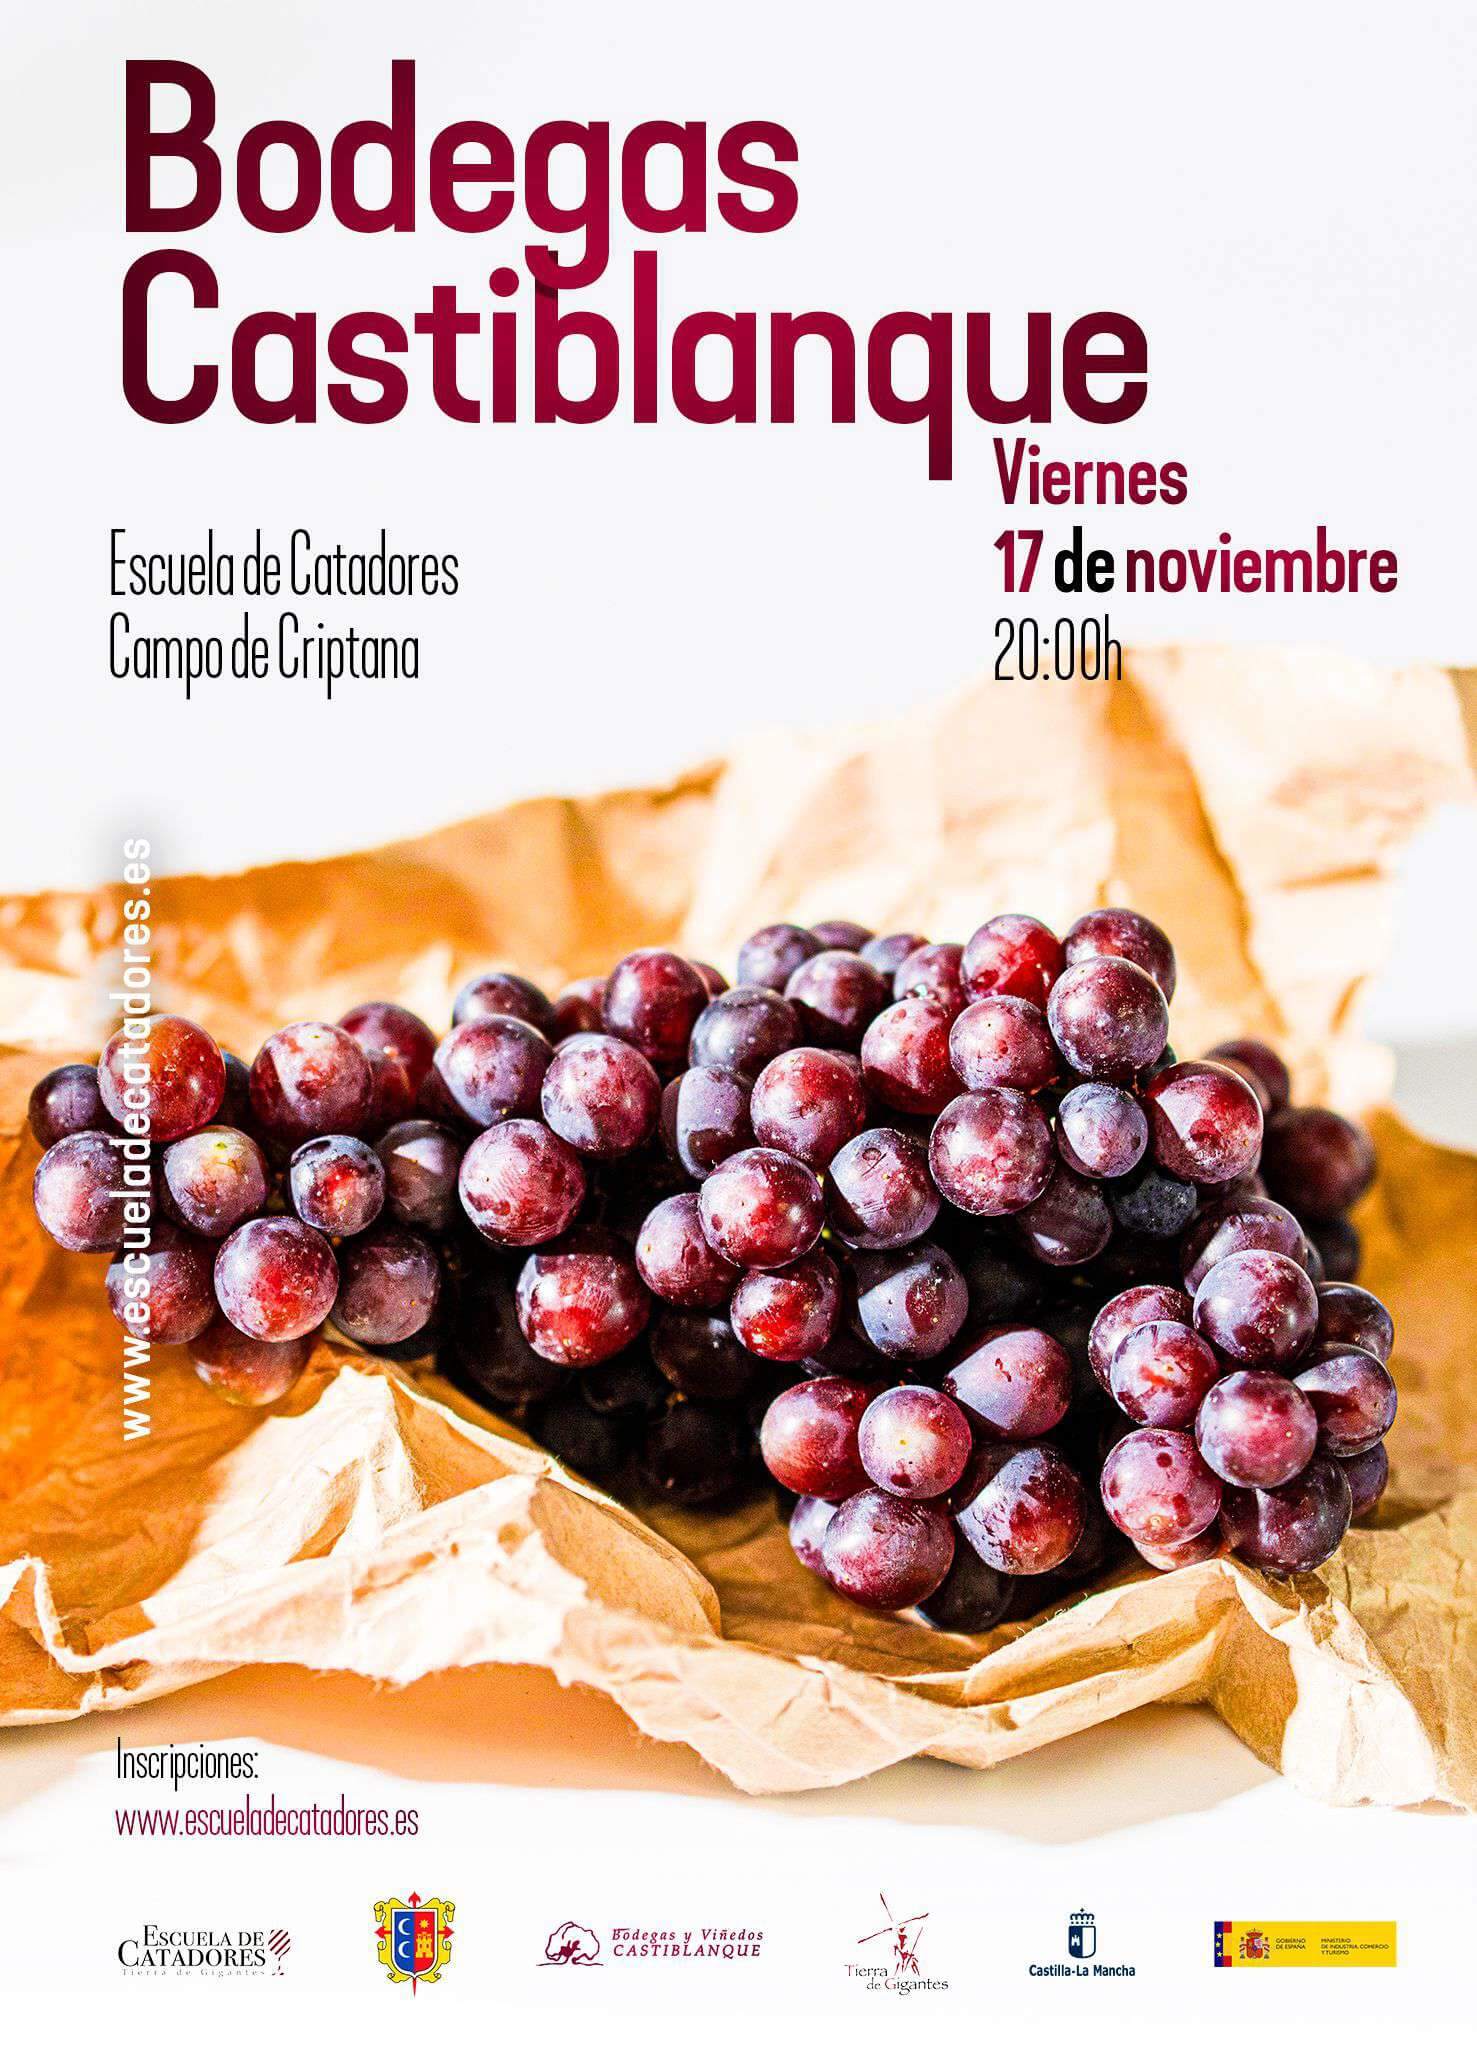 Cata de vinos Bodegas Castiblanque - Escuela de Catadores Campo de Criptana